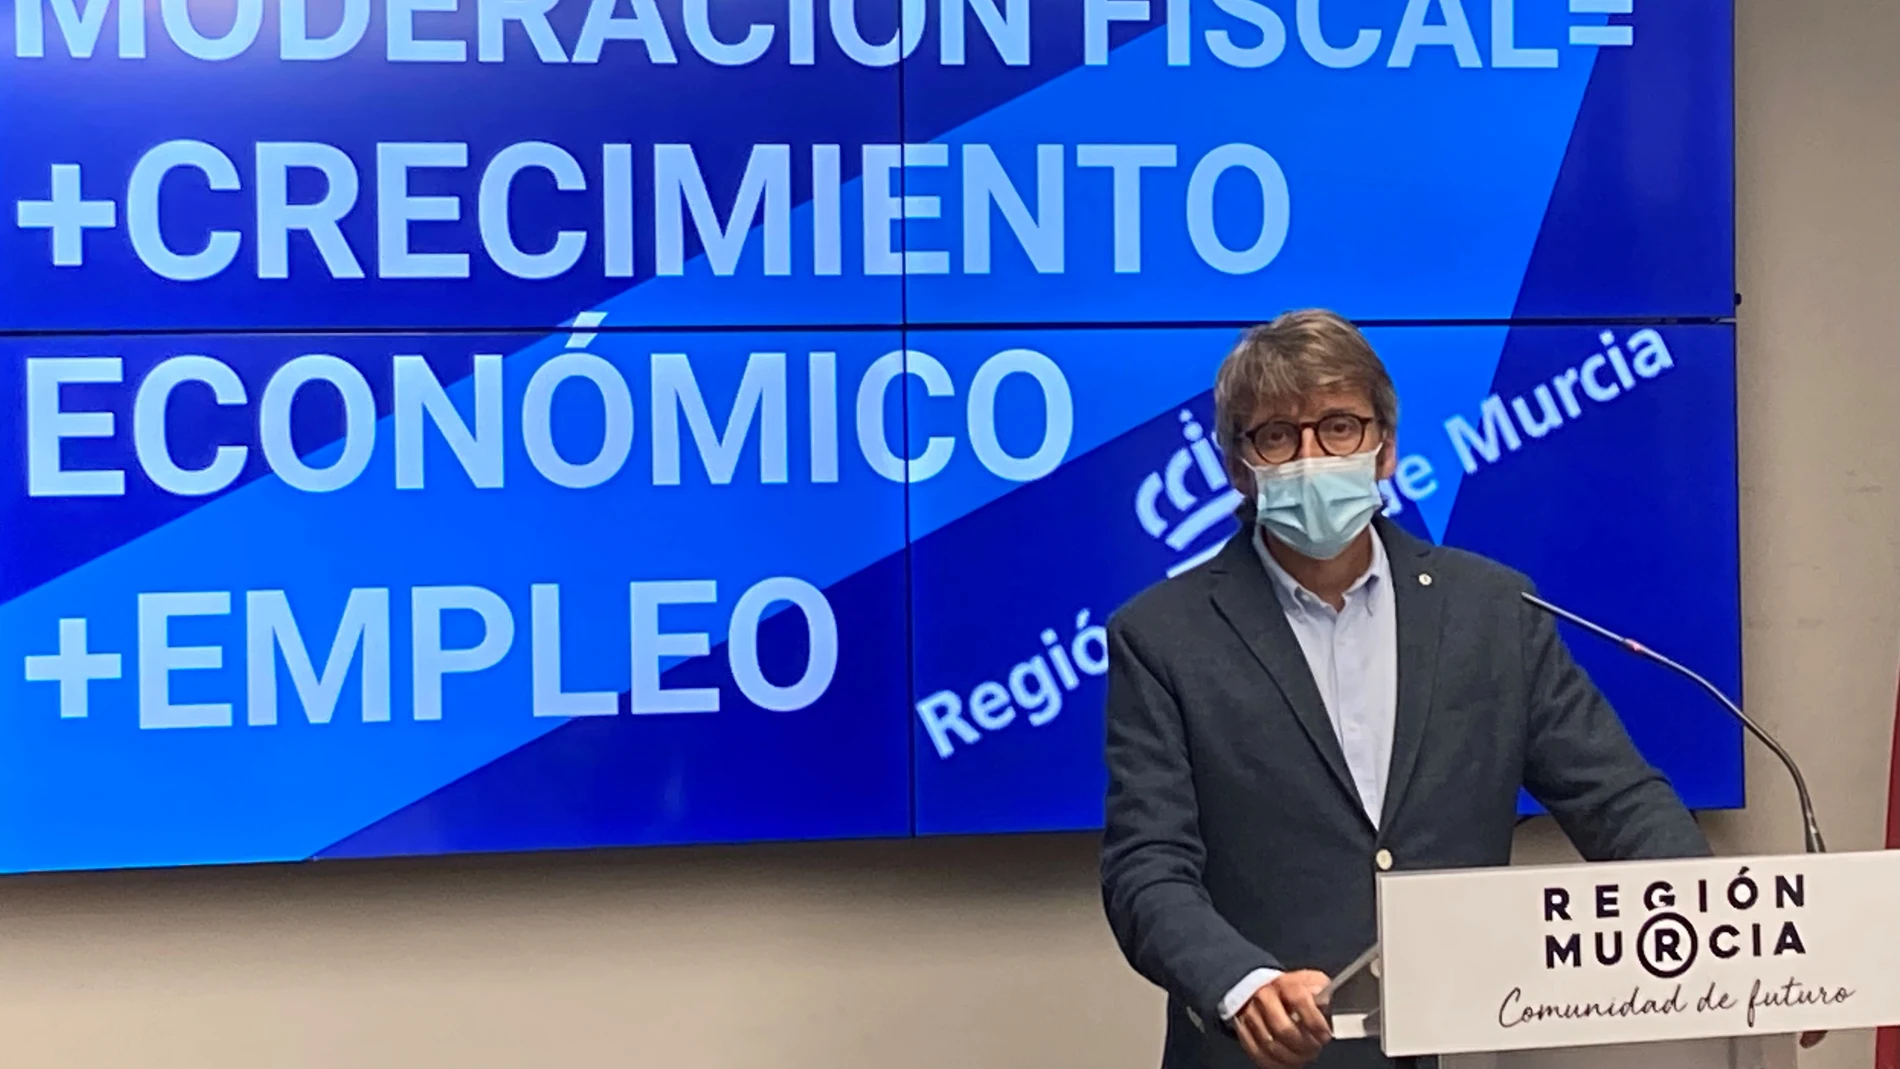 Imagen del consejero de Economía, Hacienda y Administración Digital, Luis Alberto Marín